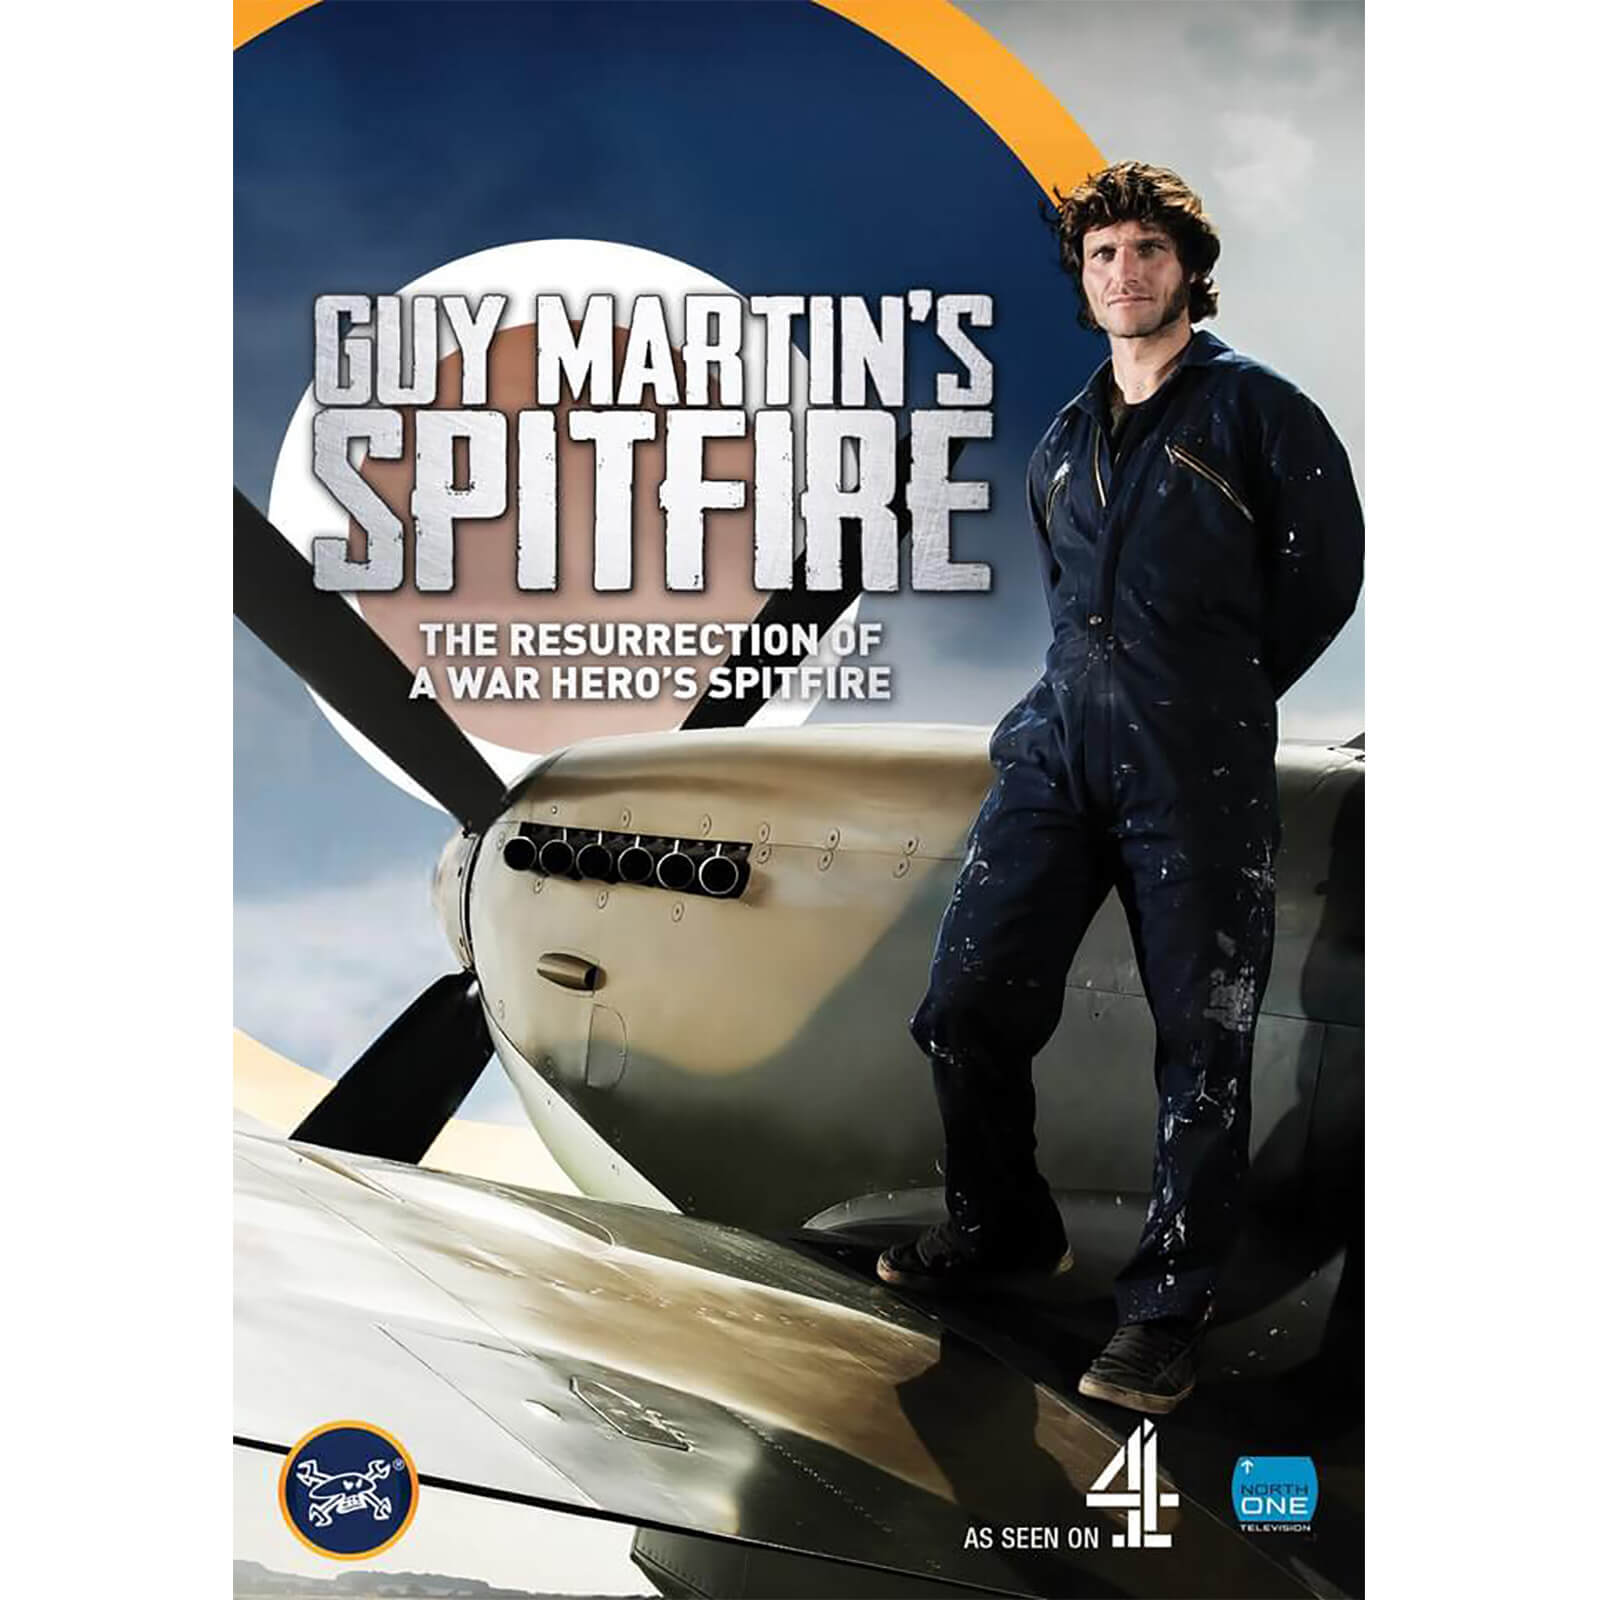 Die Spitfire von Guy Martin von Channel 4